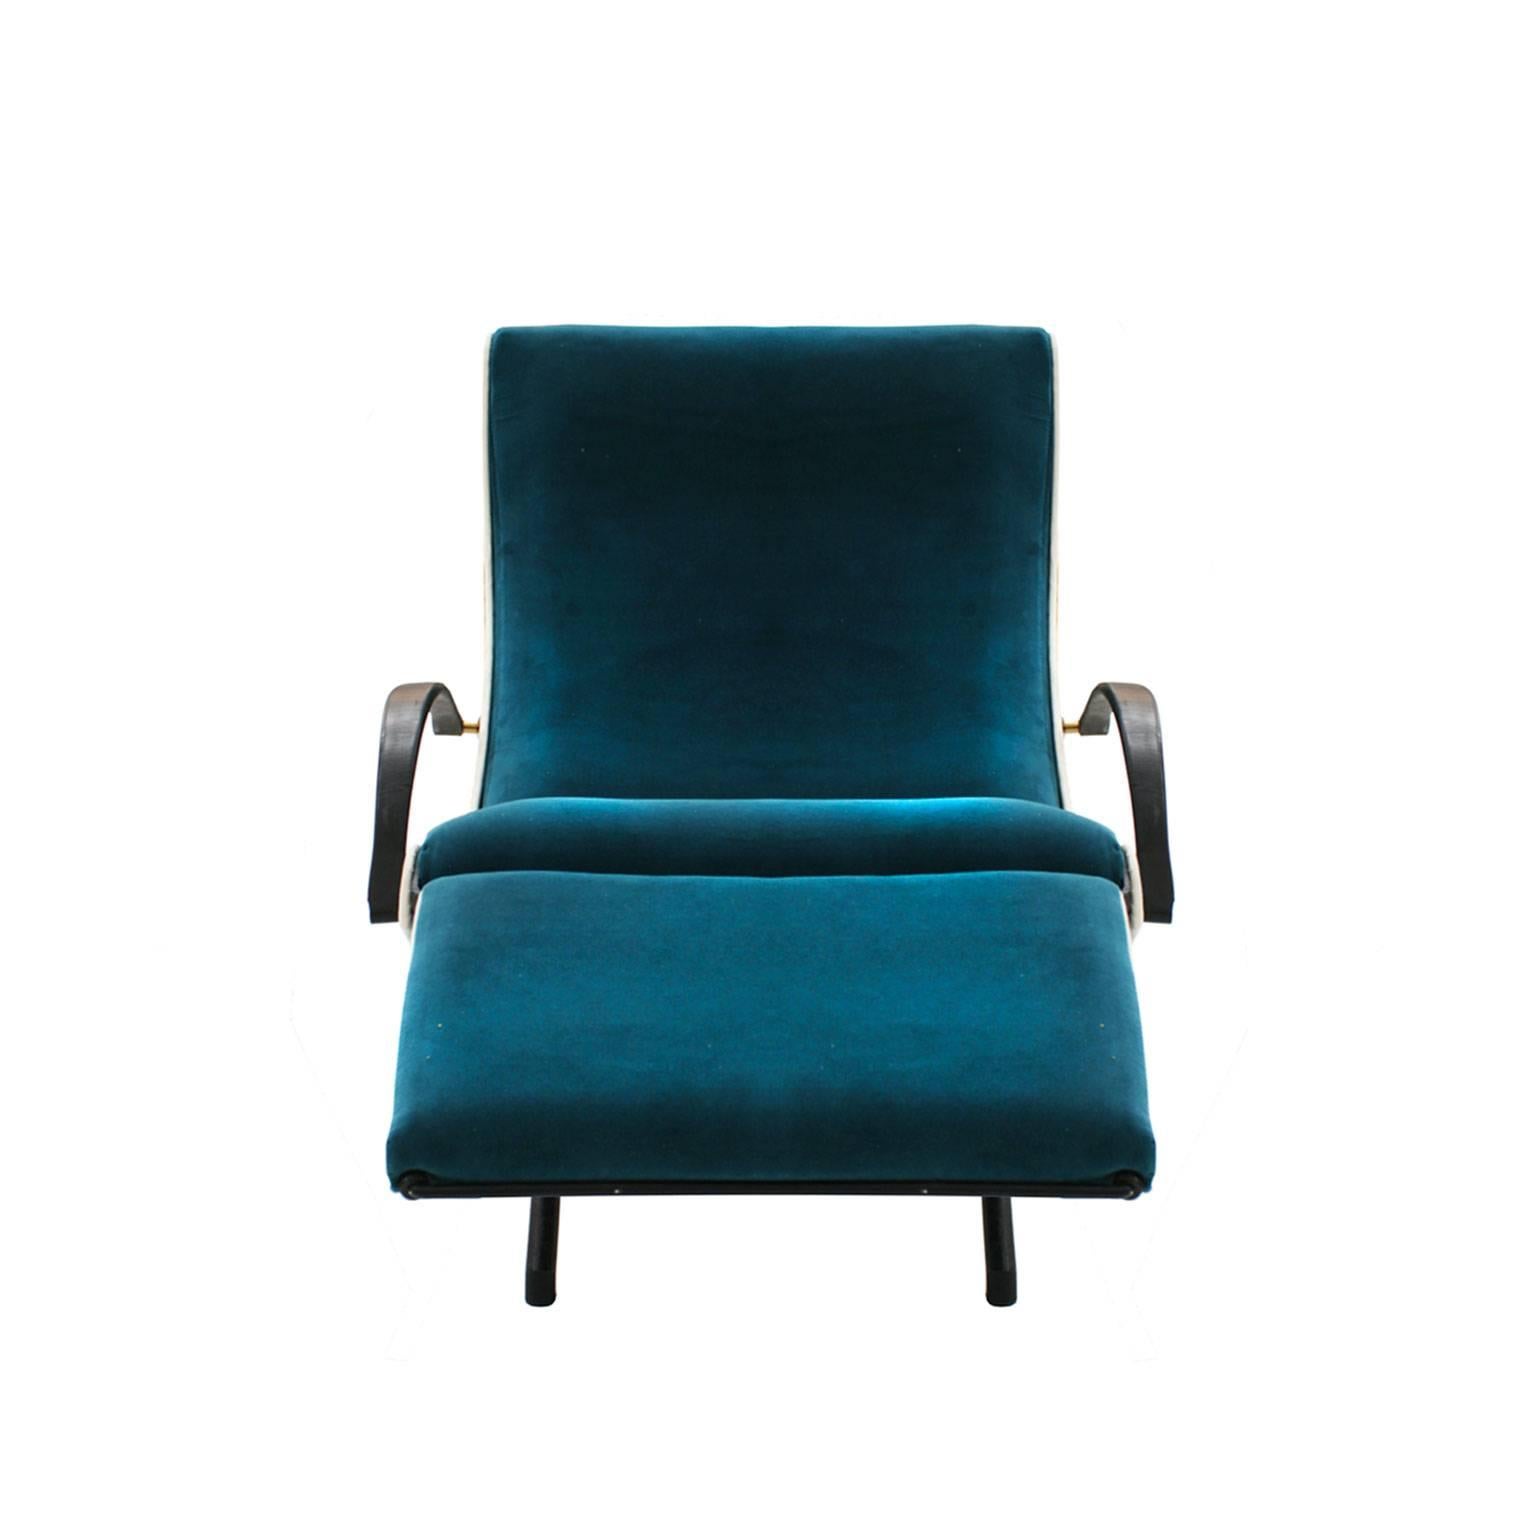 Italian Lounge Chair Model P40 Designed by Osvaldo Borsani for Tecno